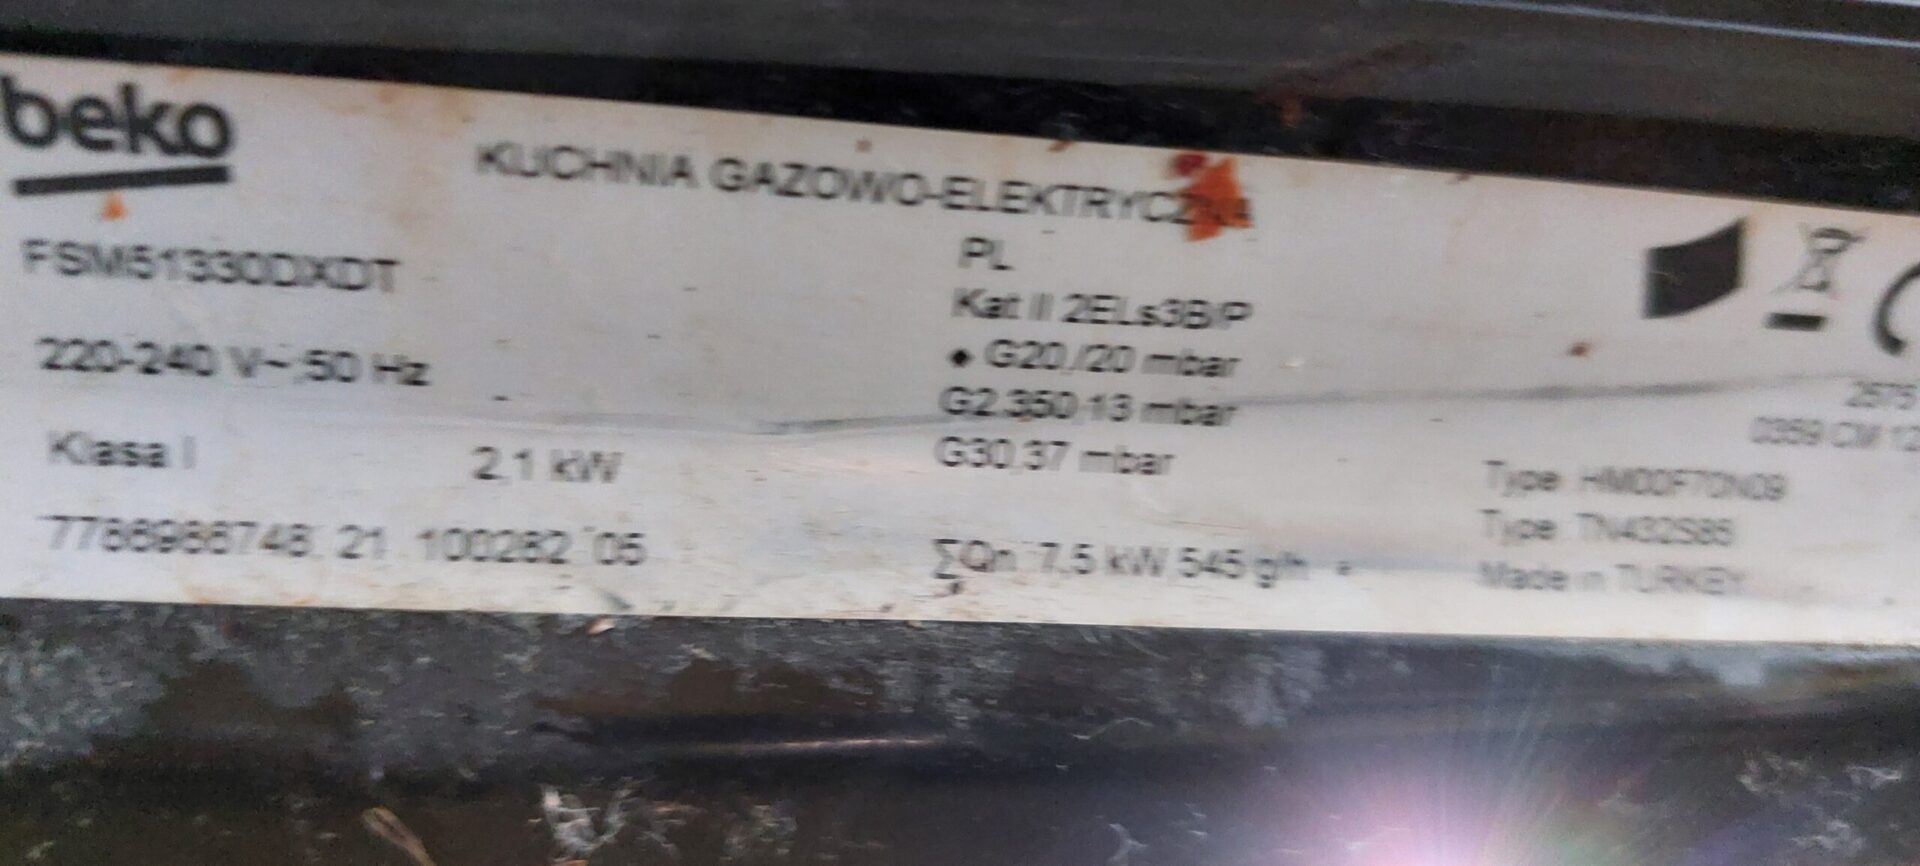 Tabliczka znamionowa kuchenki gazowo-elektryczna Beko FSM51330DXDT